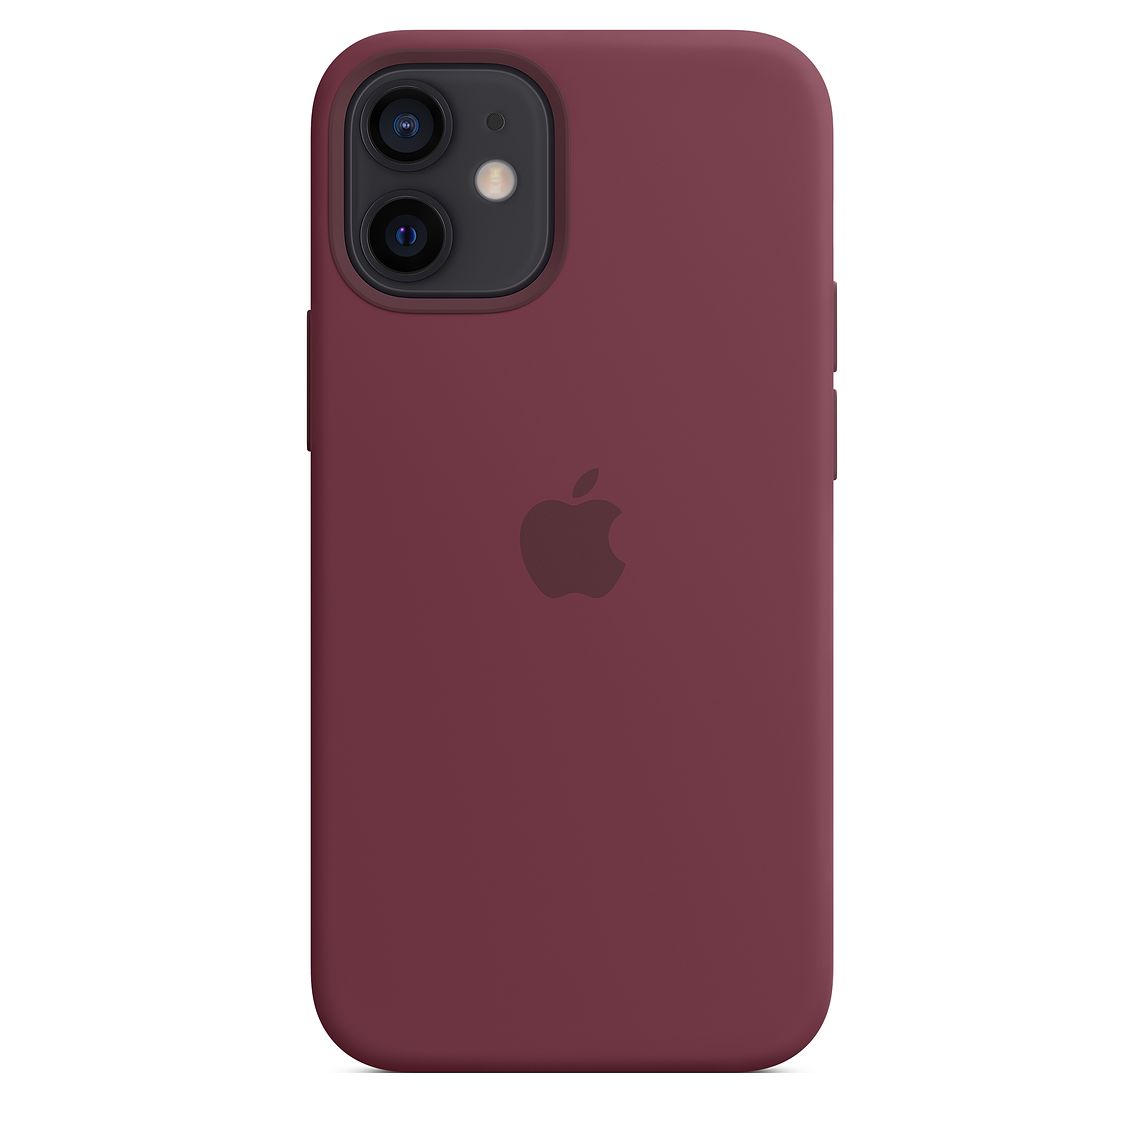 Фото — Чехол для смартфона Apple MagSafe для iPhone 12 mini, силикон, сливовый